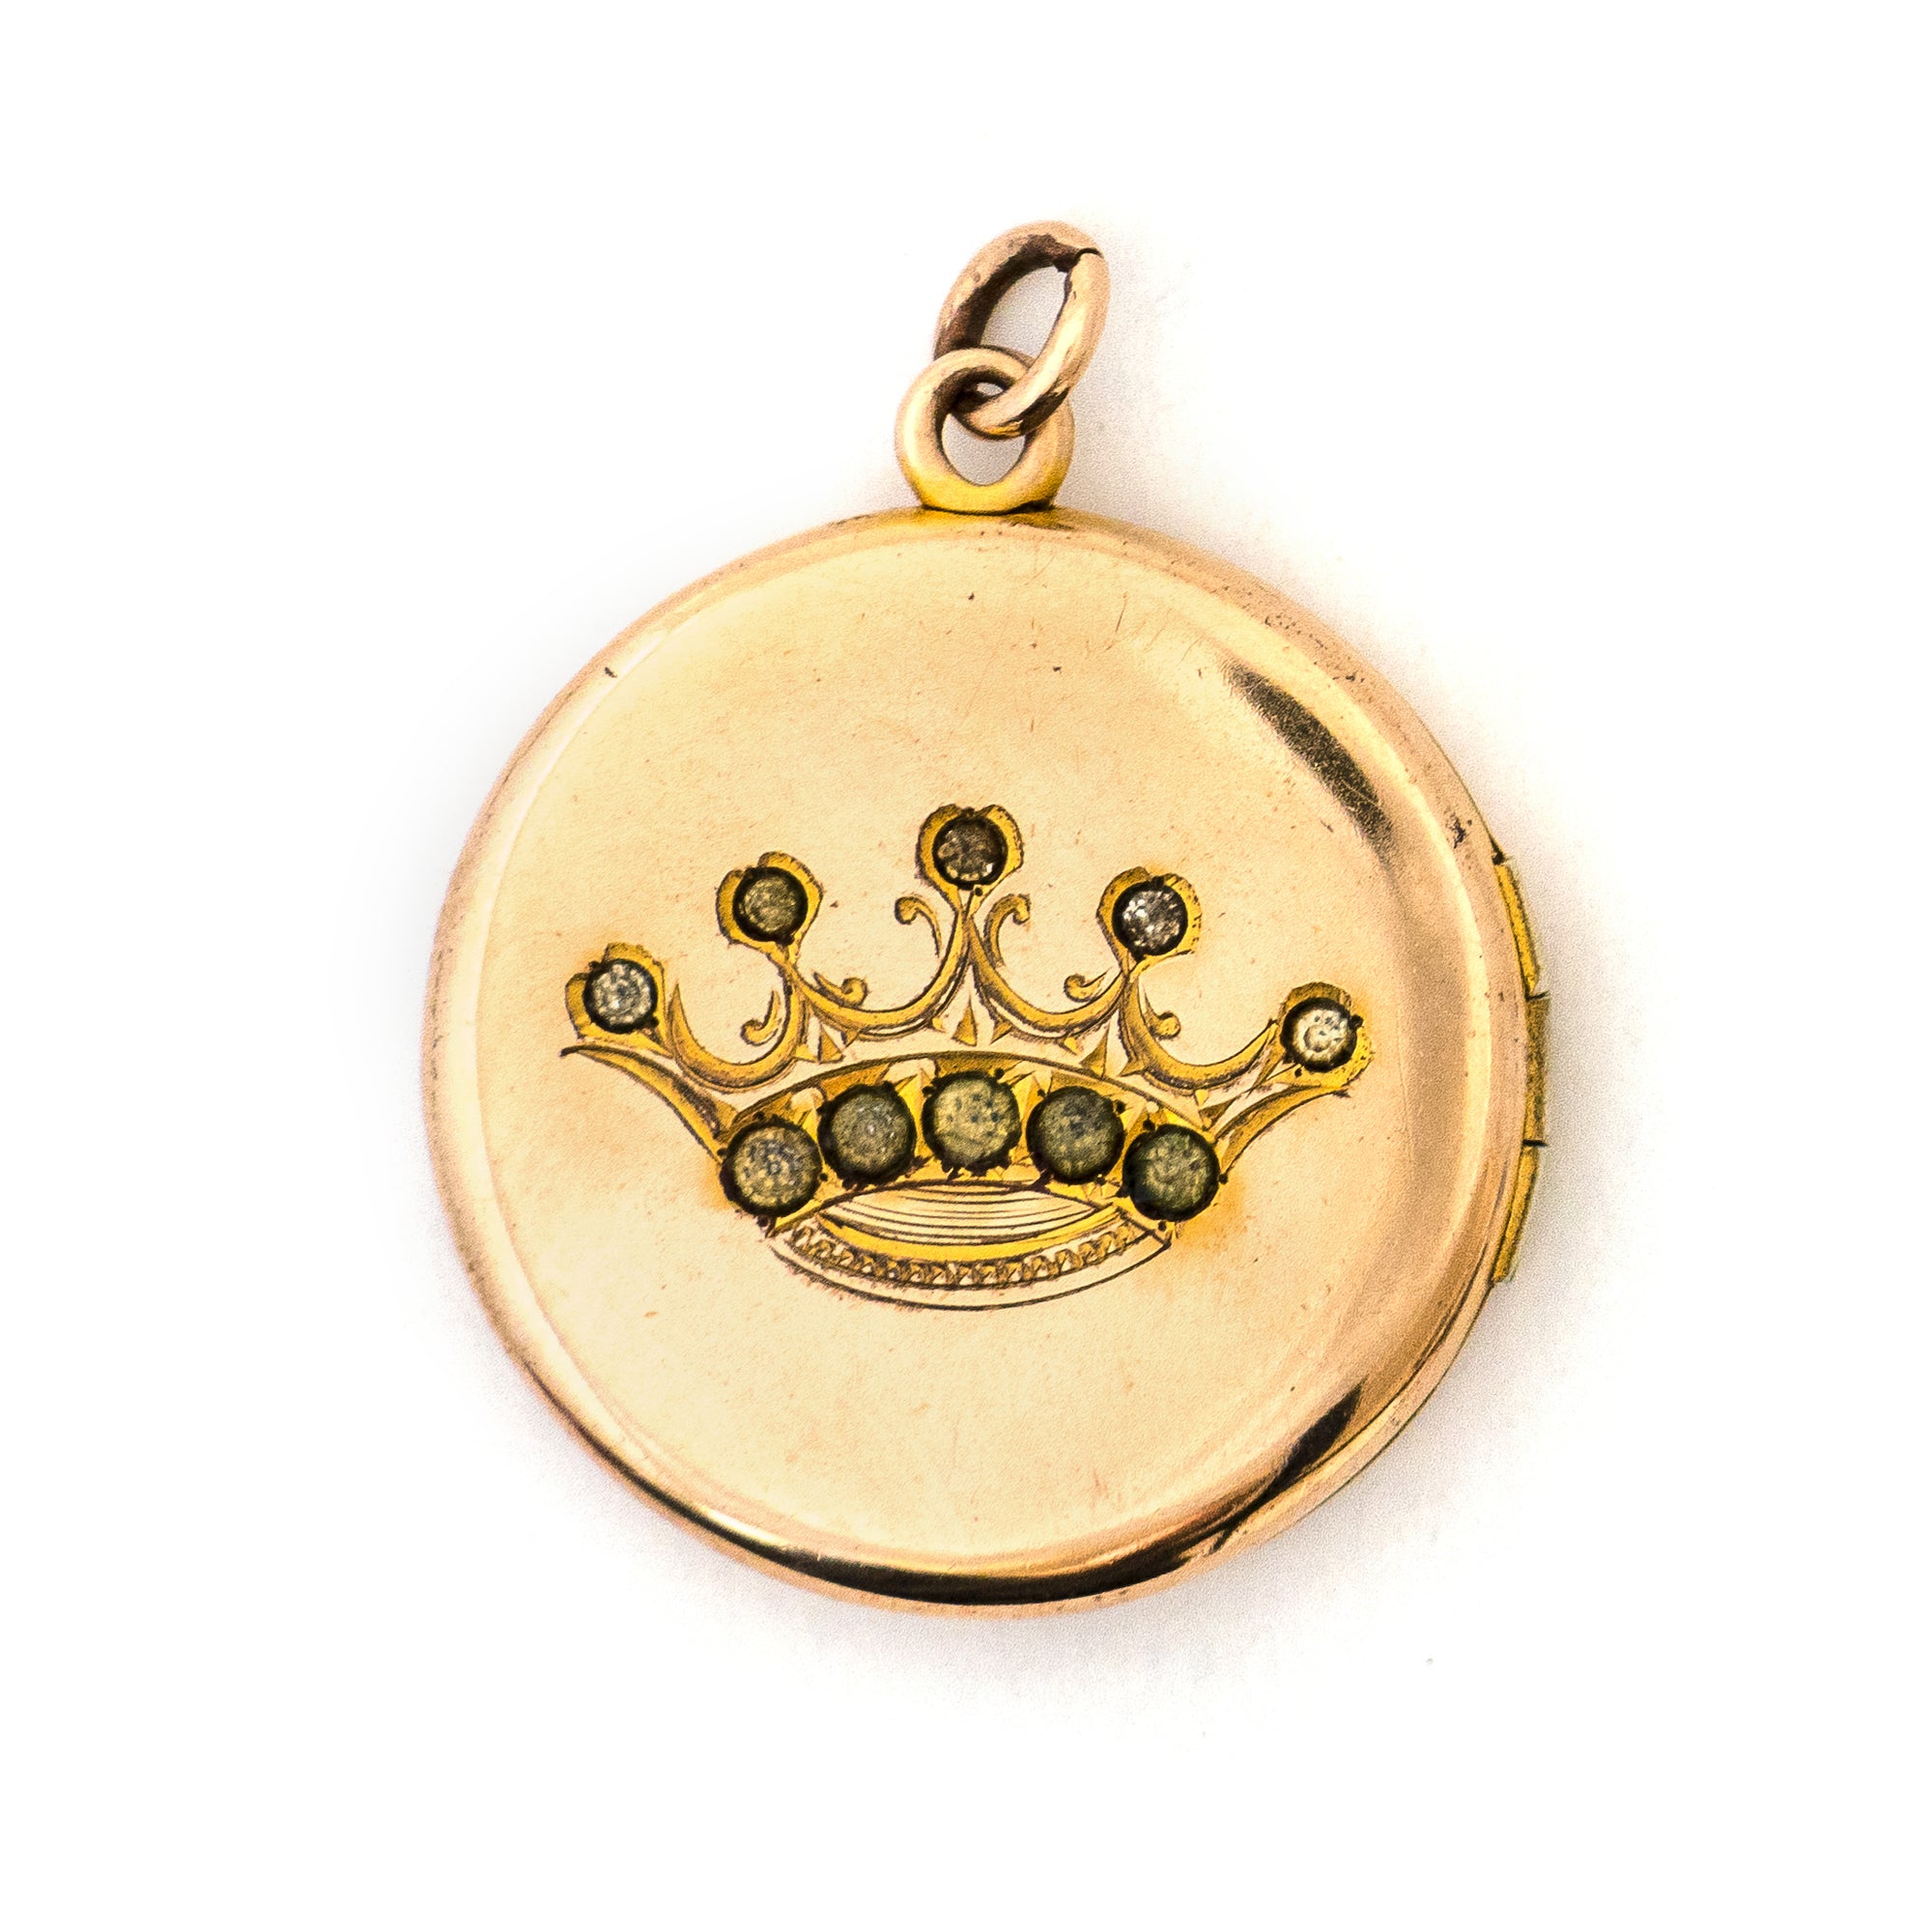 The Queen's Crown Locket